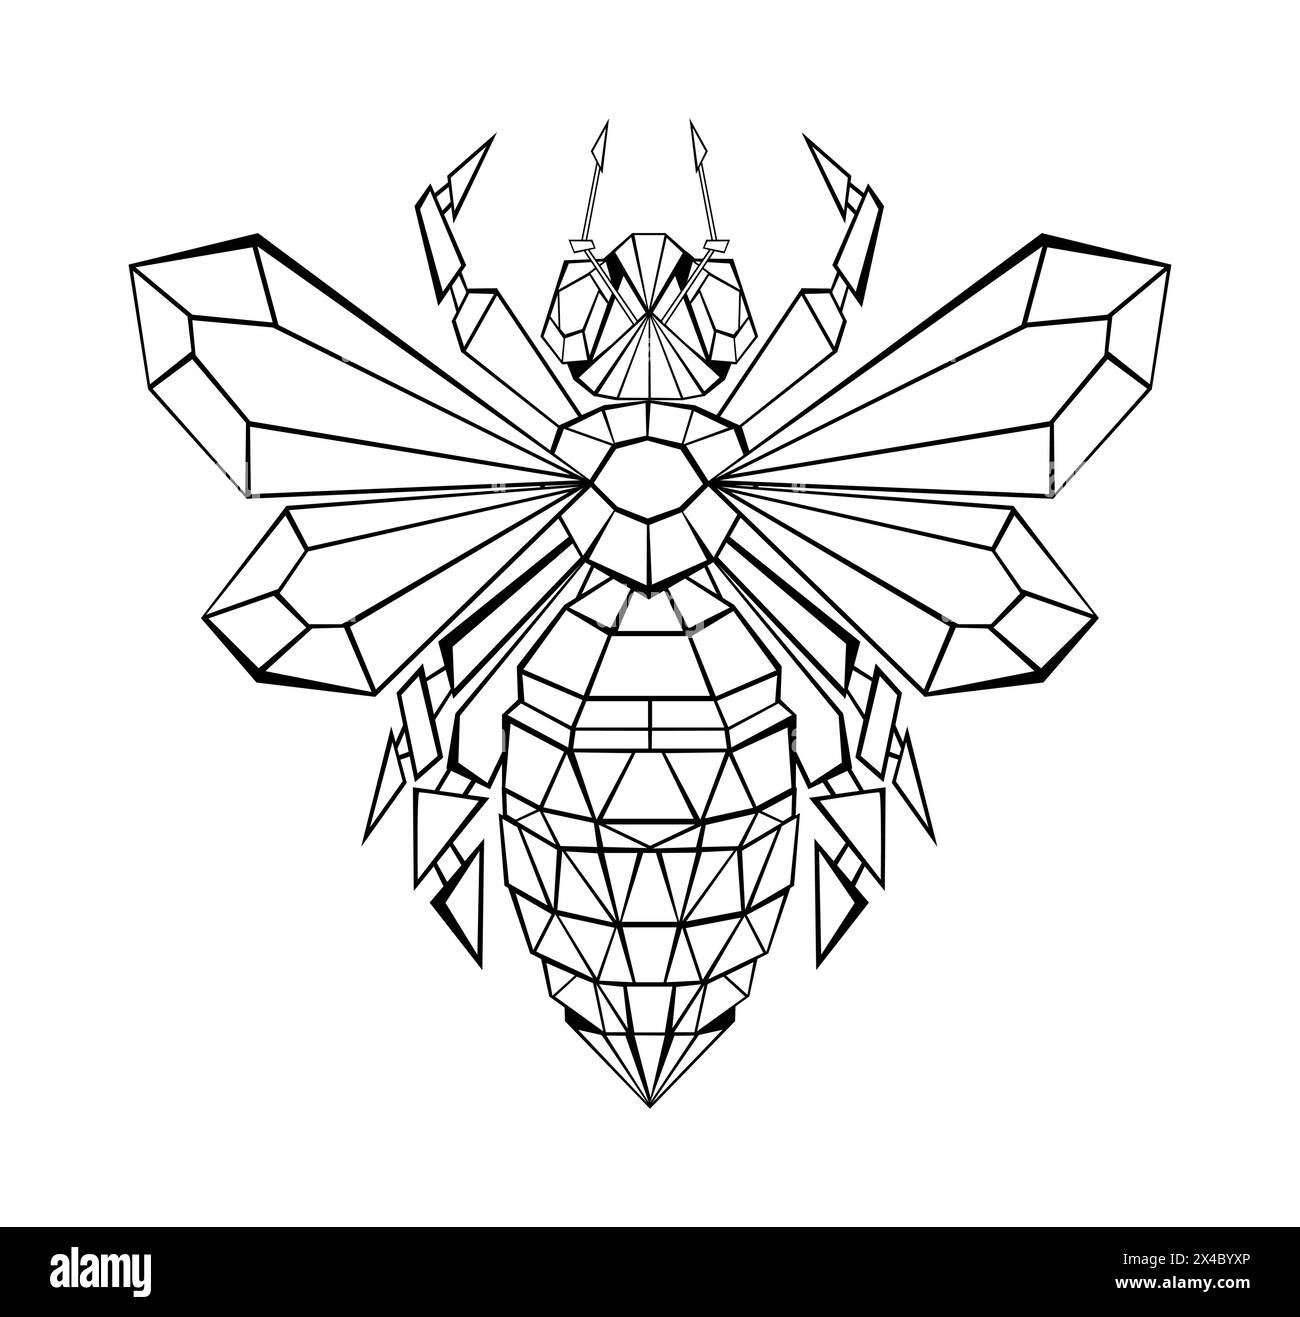 Disegno artistico, poligonale, contorno dell'ape su sfondo bianco. Stile poligonale. Illustrazione Vettoriale